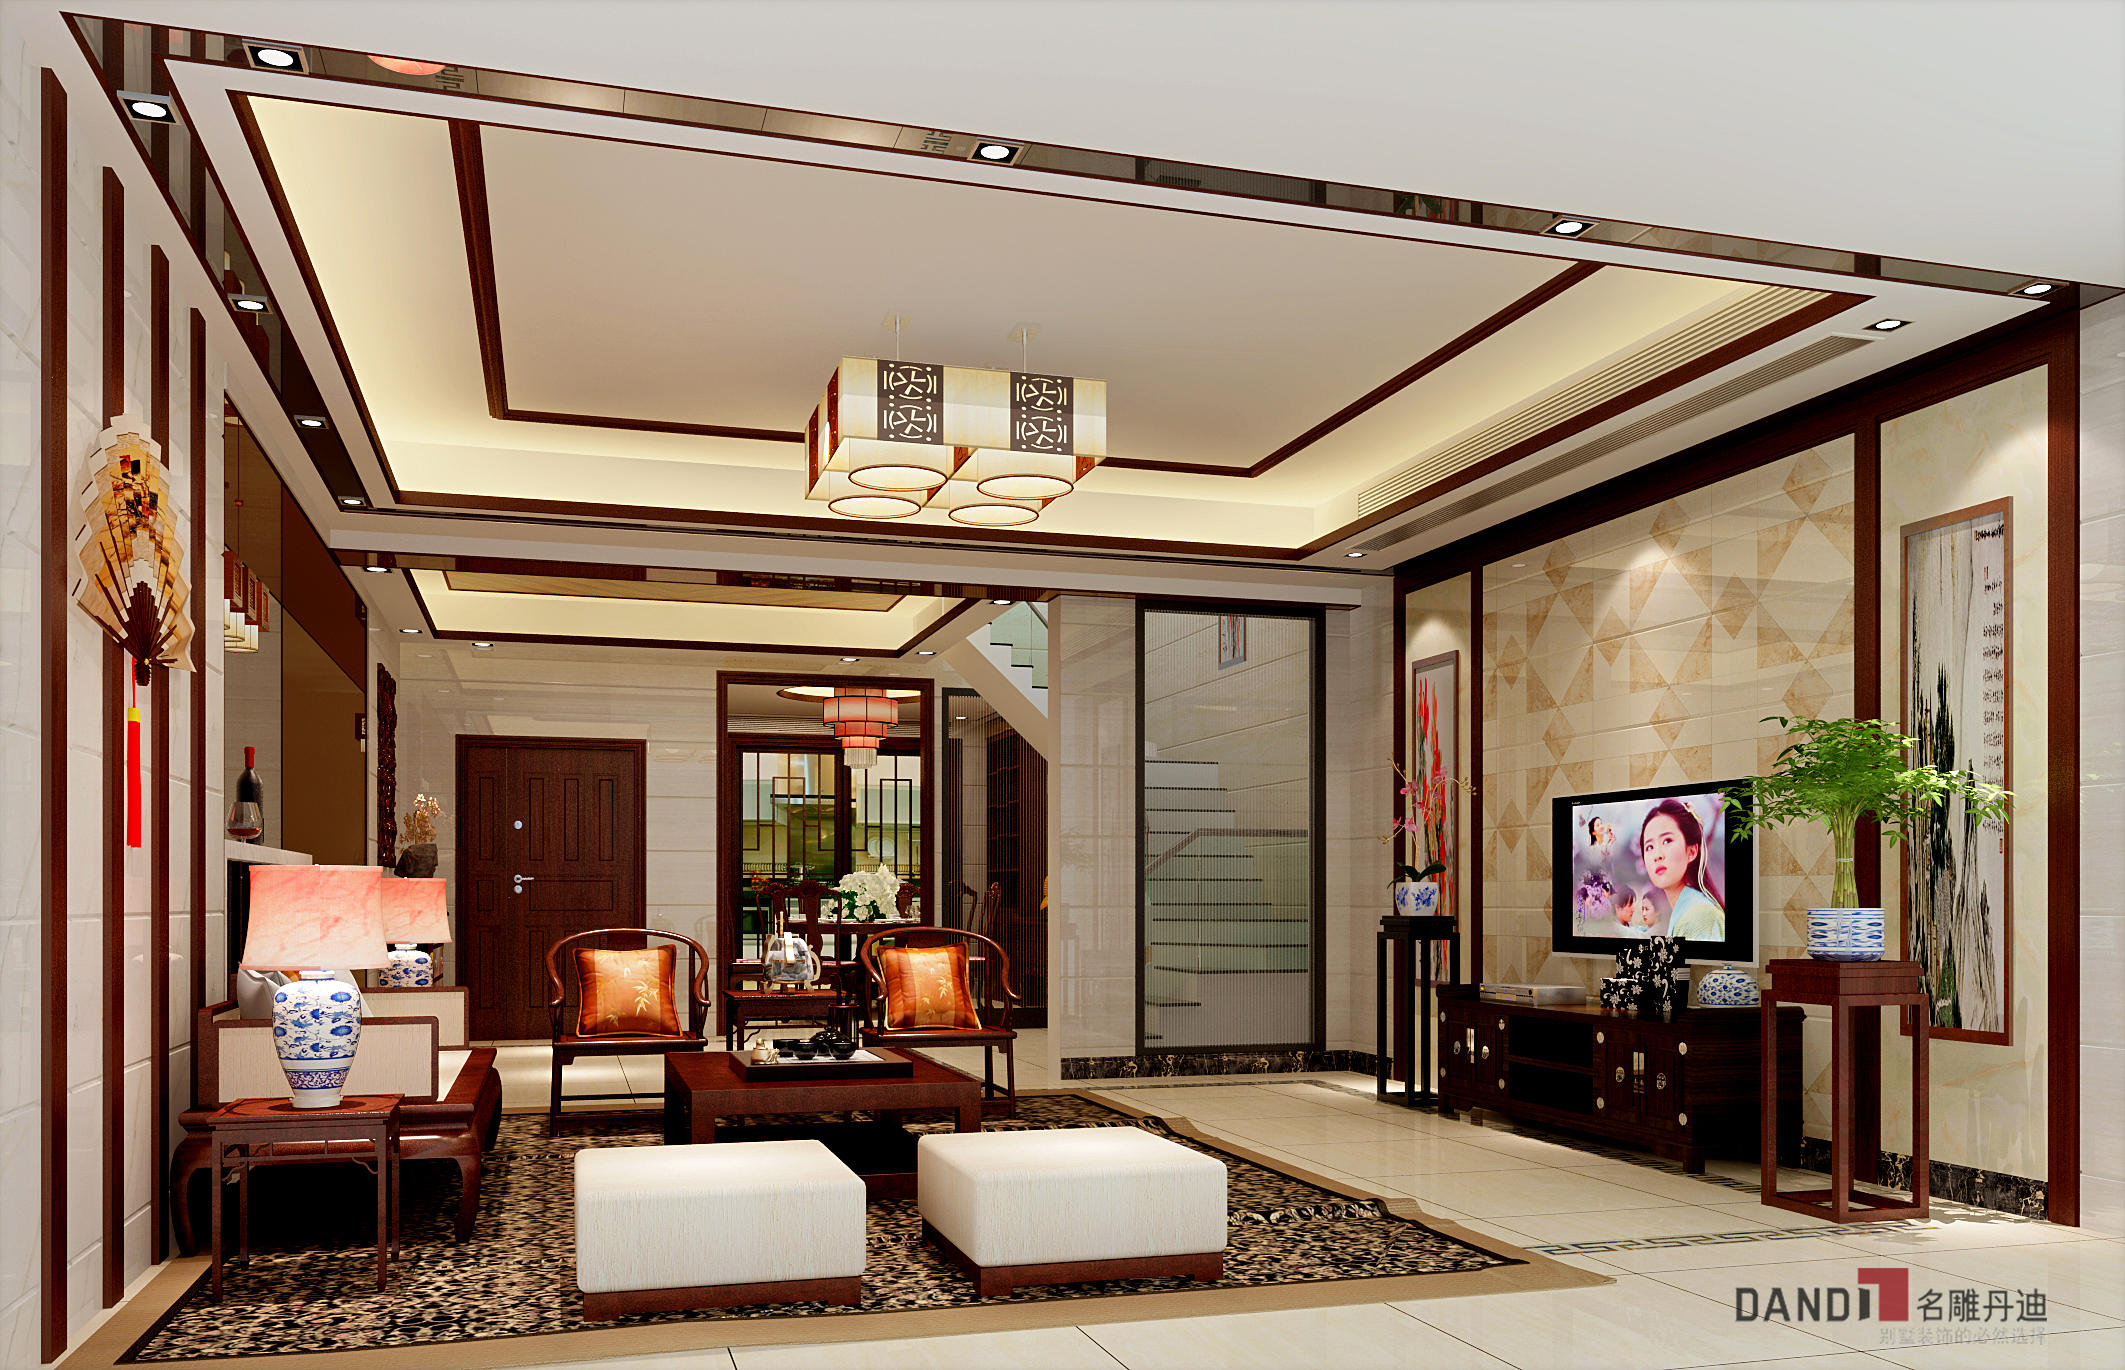 现代中式 缓和、居家 现代奢华感 别墅 客厅图片来自名雕丹迪在卓越维港别墅的分享